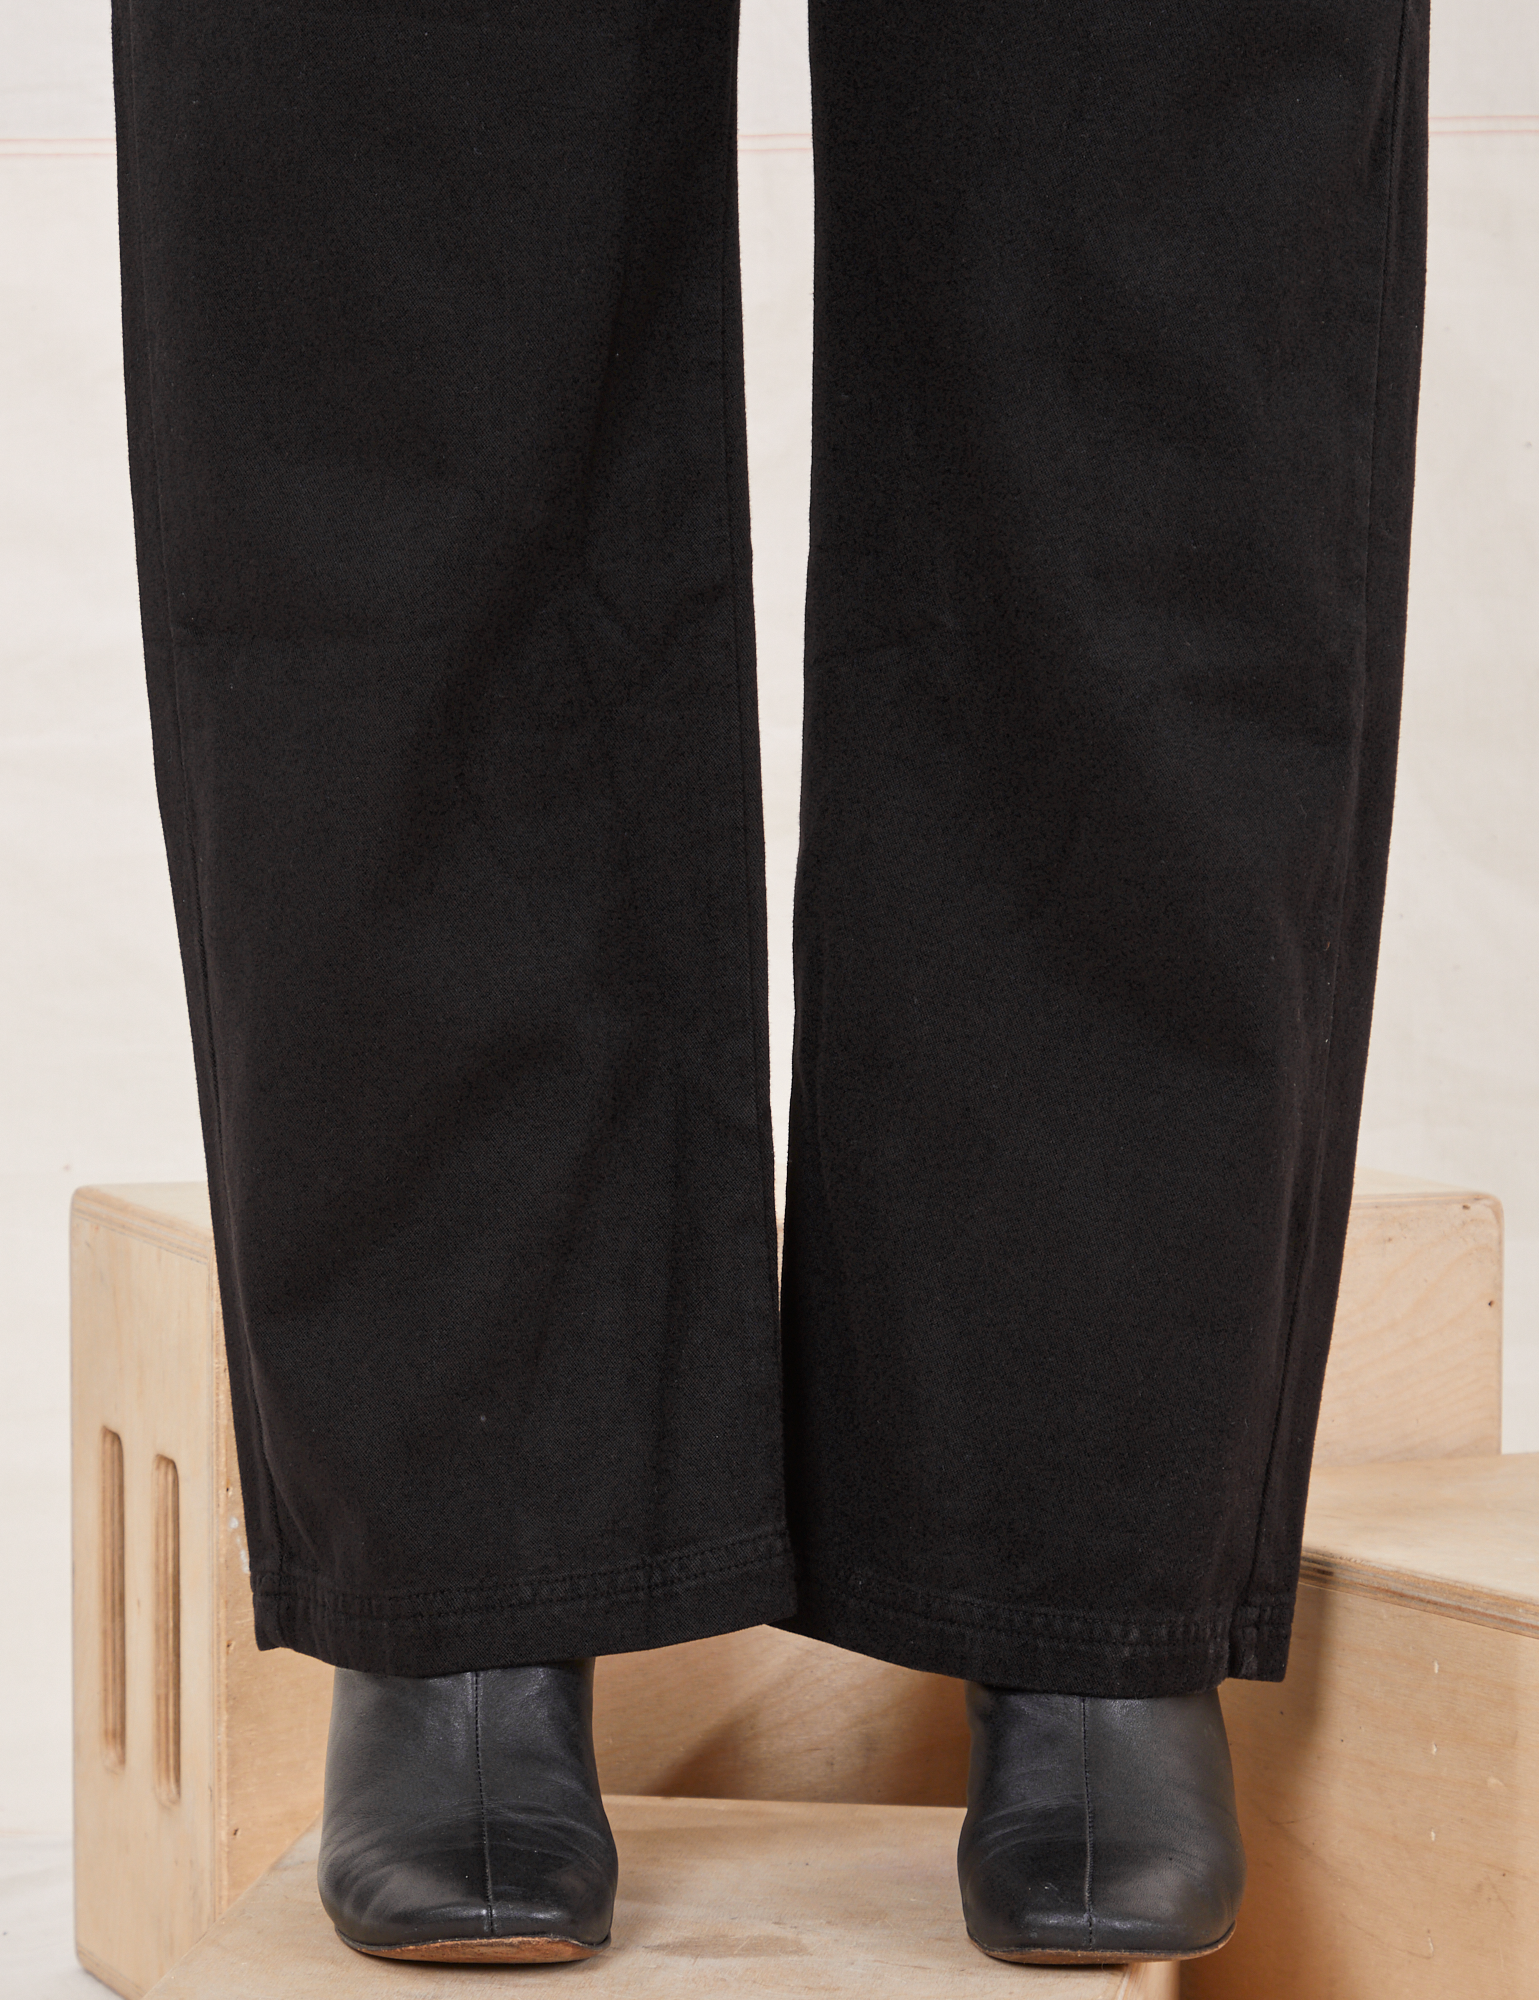 Organic Work Pants in Basic Black pant leg close up